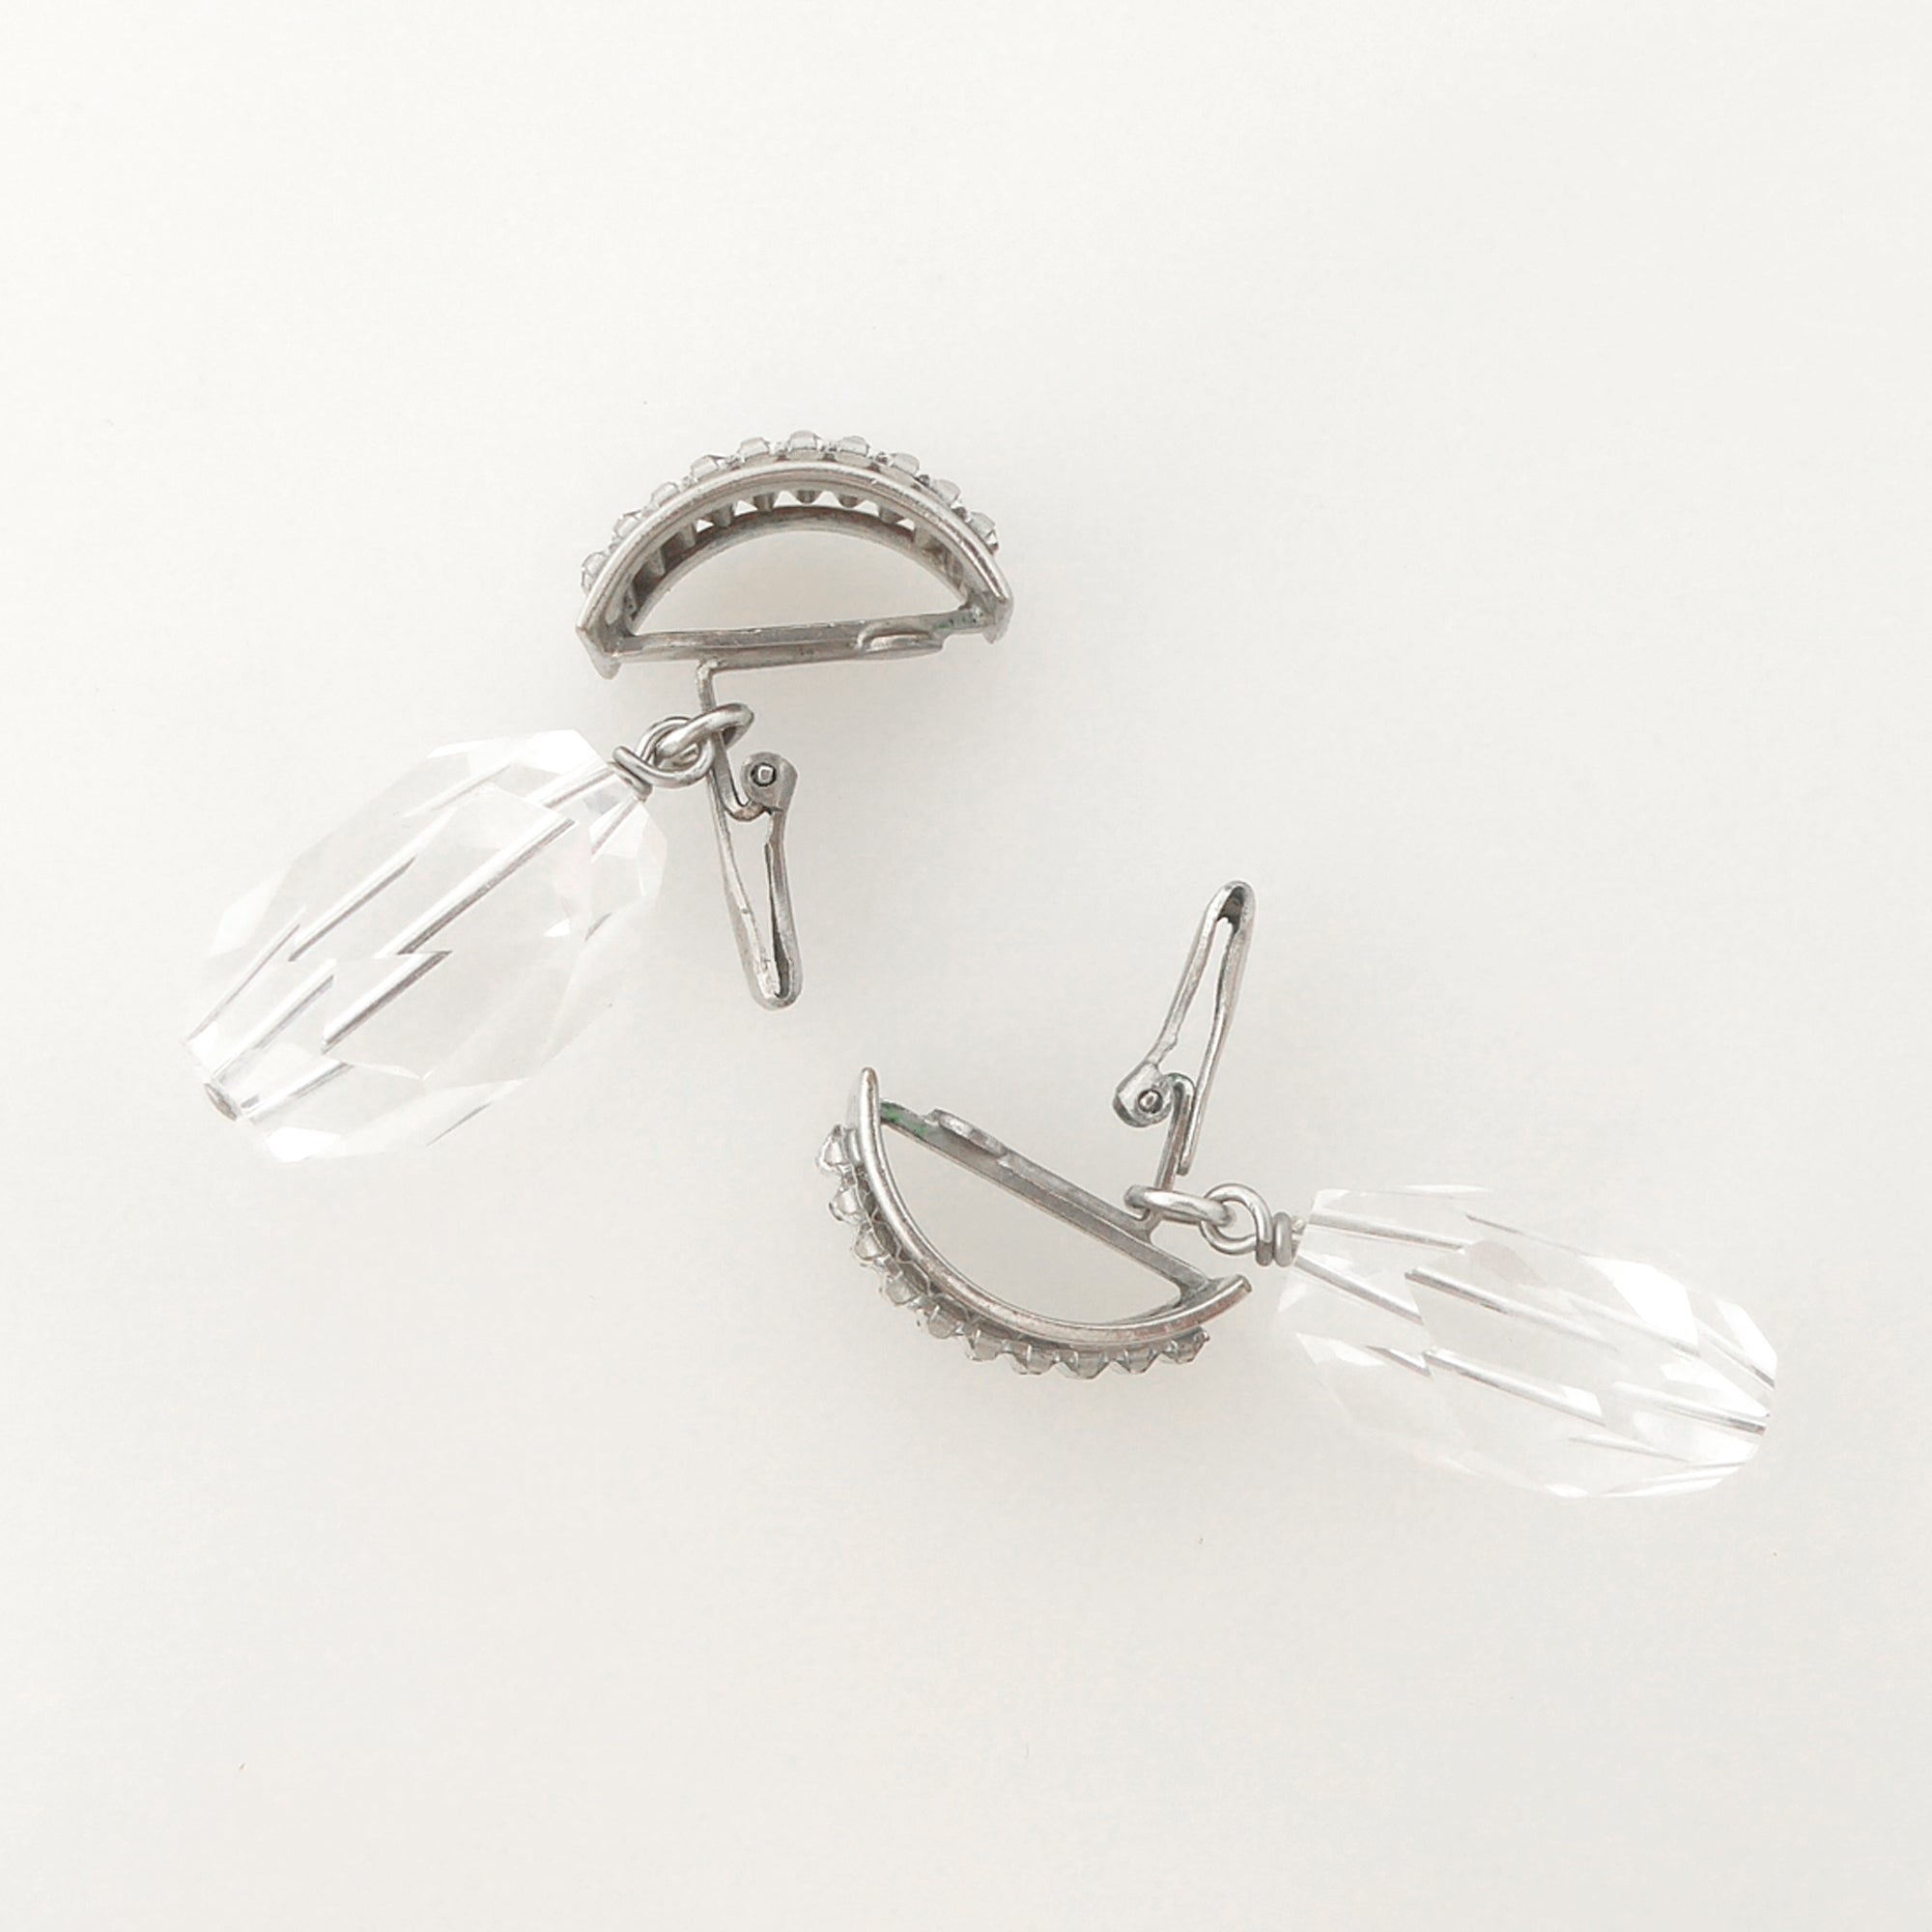 Rhinestone baguette earrings by Jenny Dayco 6